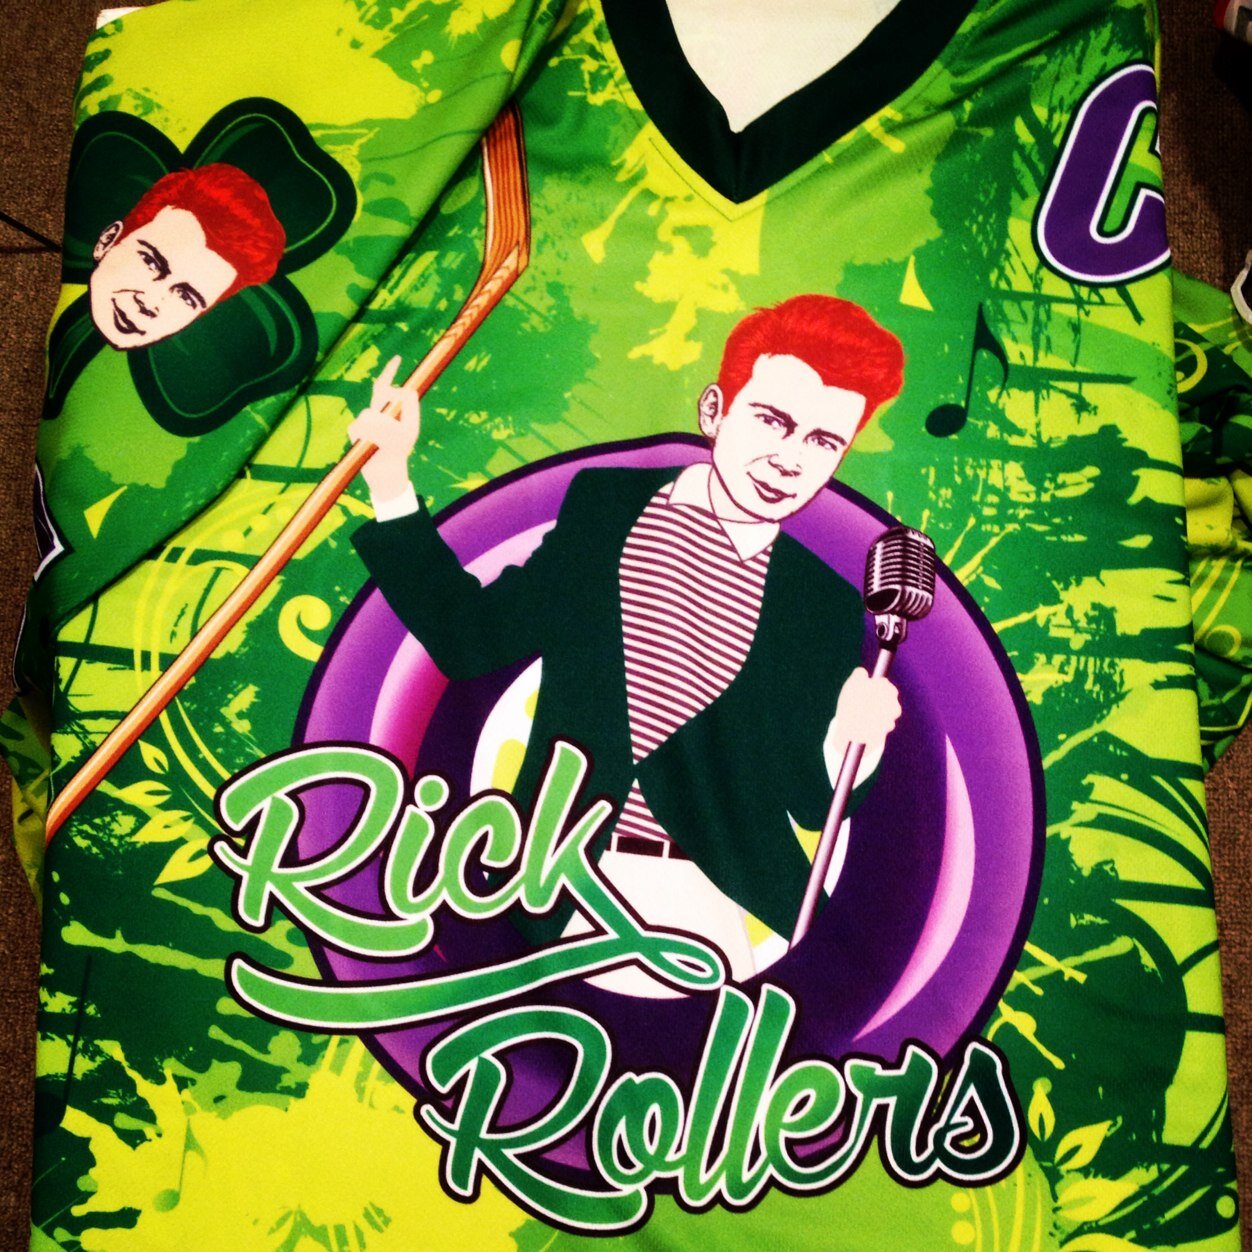 The Rick RollersHockey Team